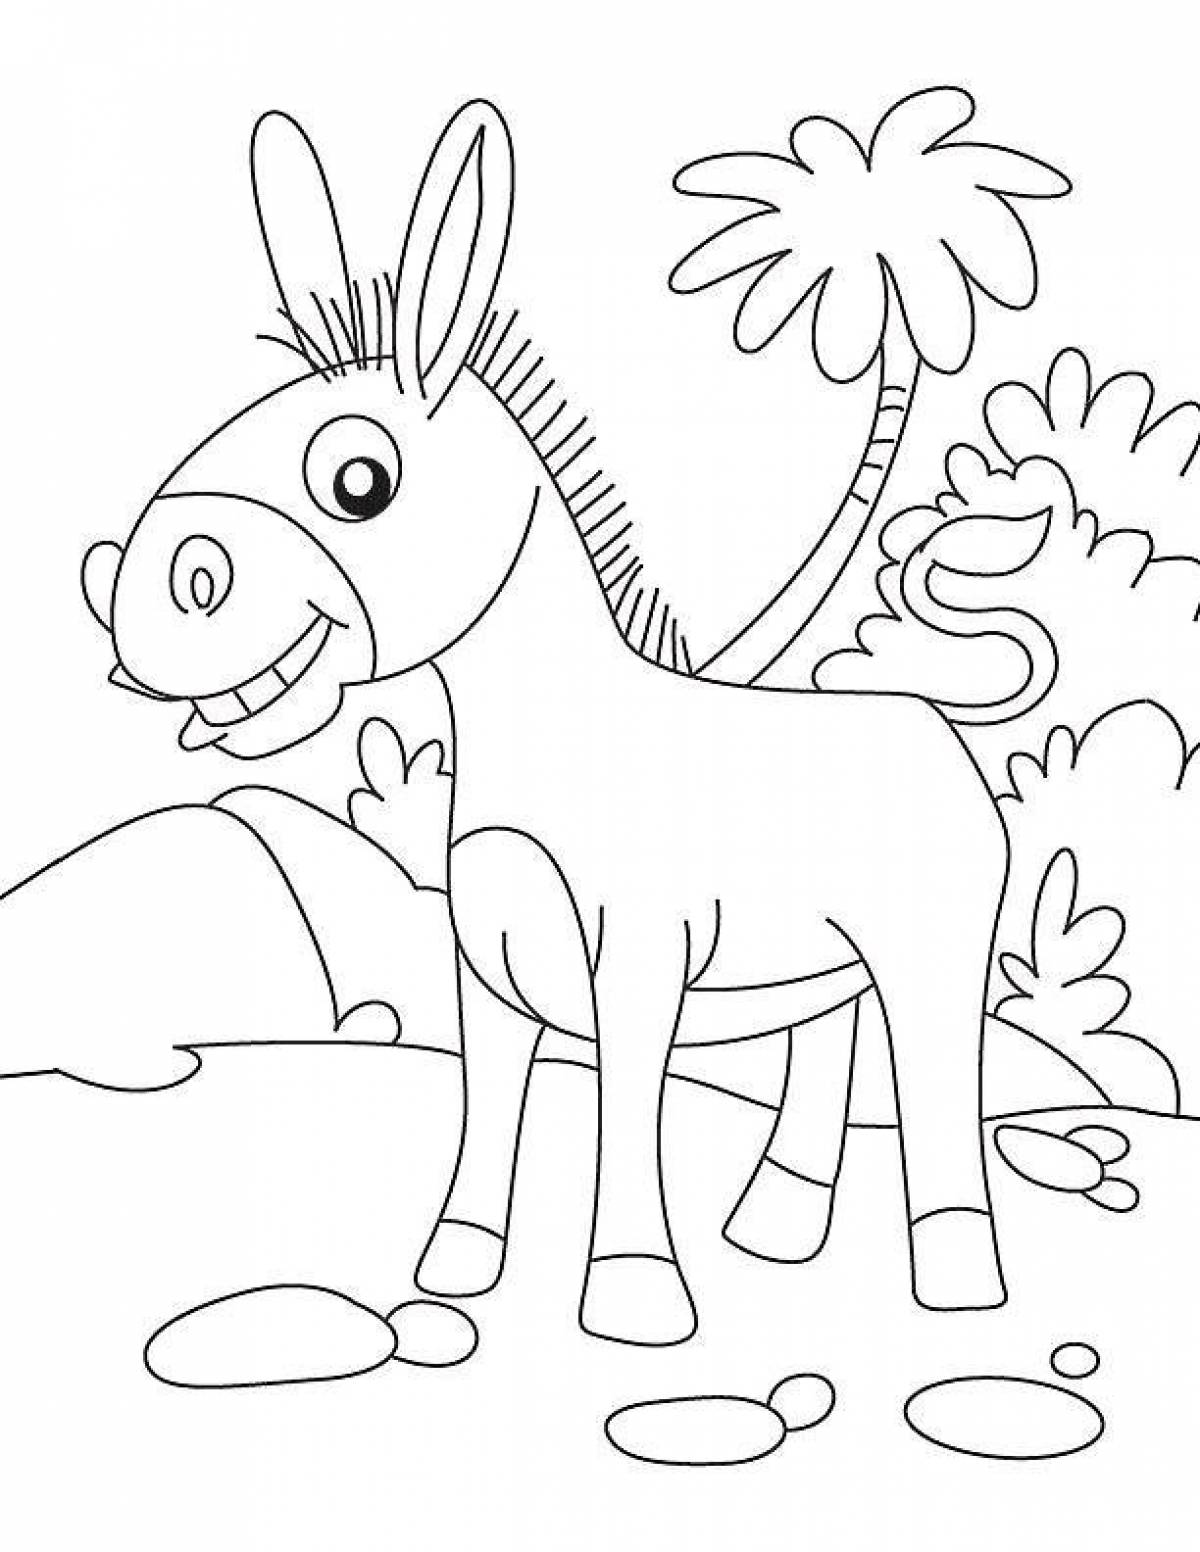 Fun coloring donkey